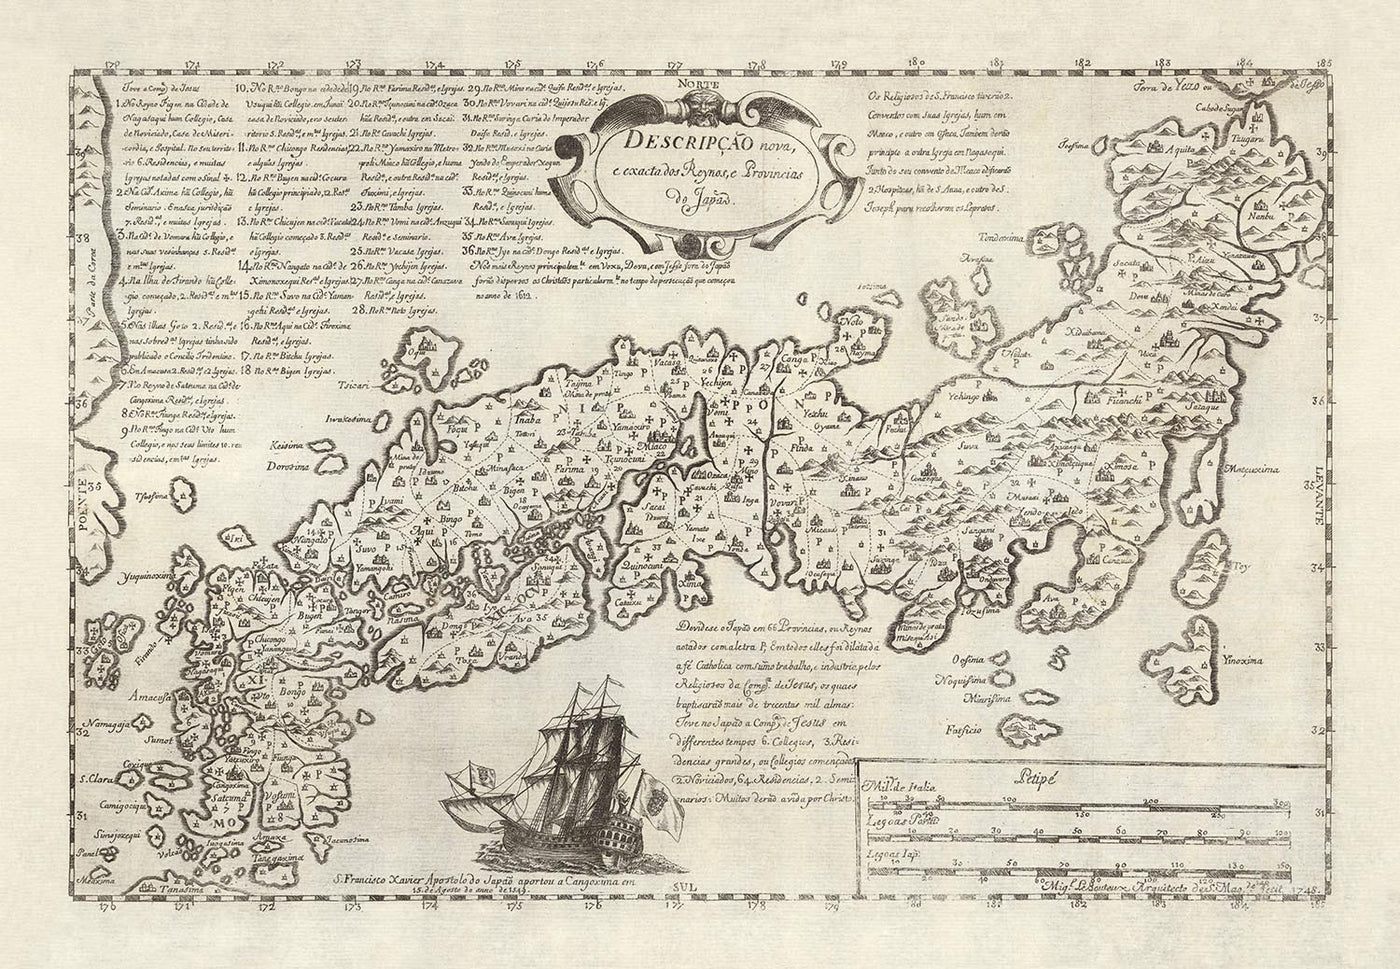 Antiguo mapa portugués de Japón por Moreira, 1679: Edo, Kioto, Osaka, detalles de navegación, era Shogun